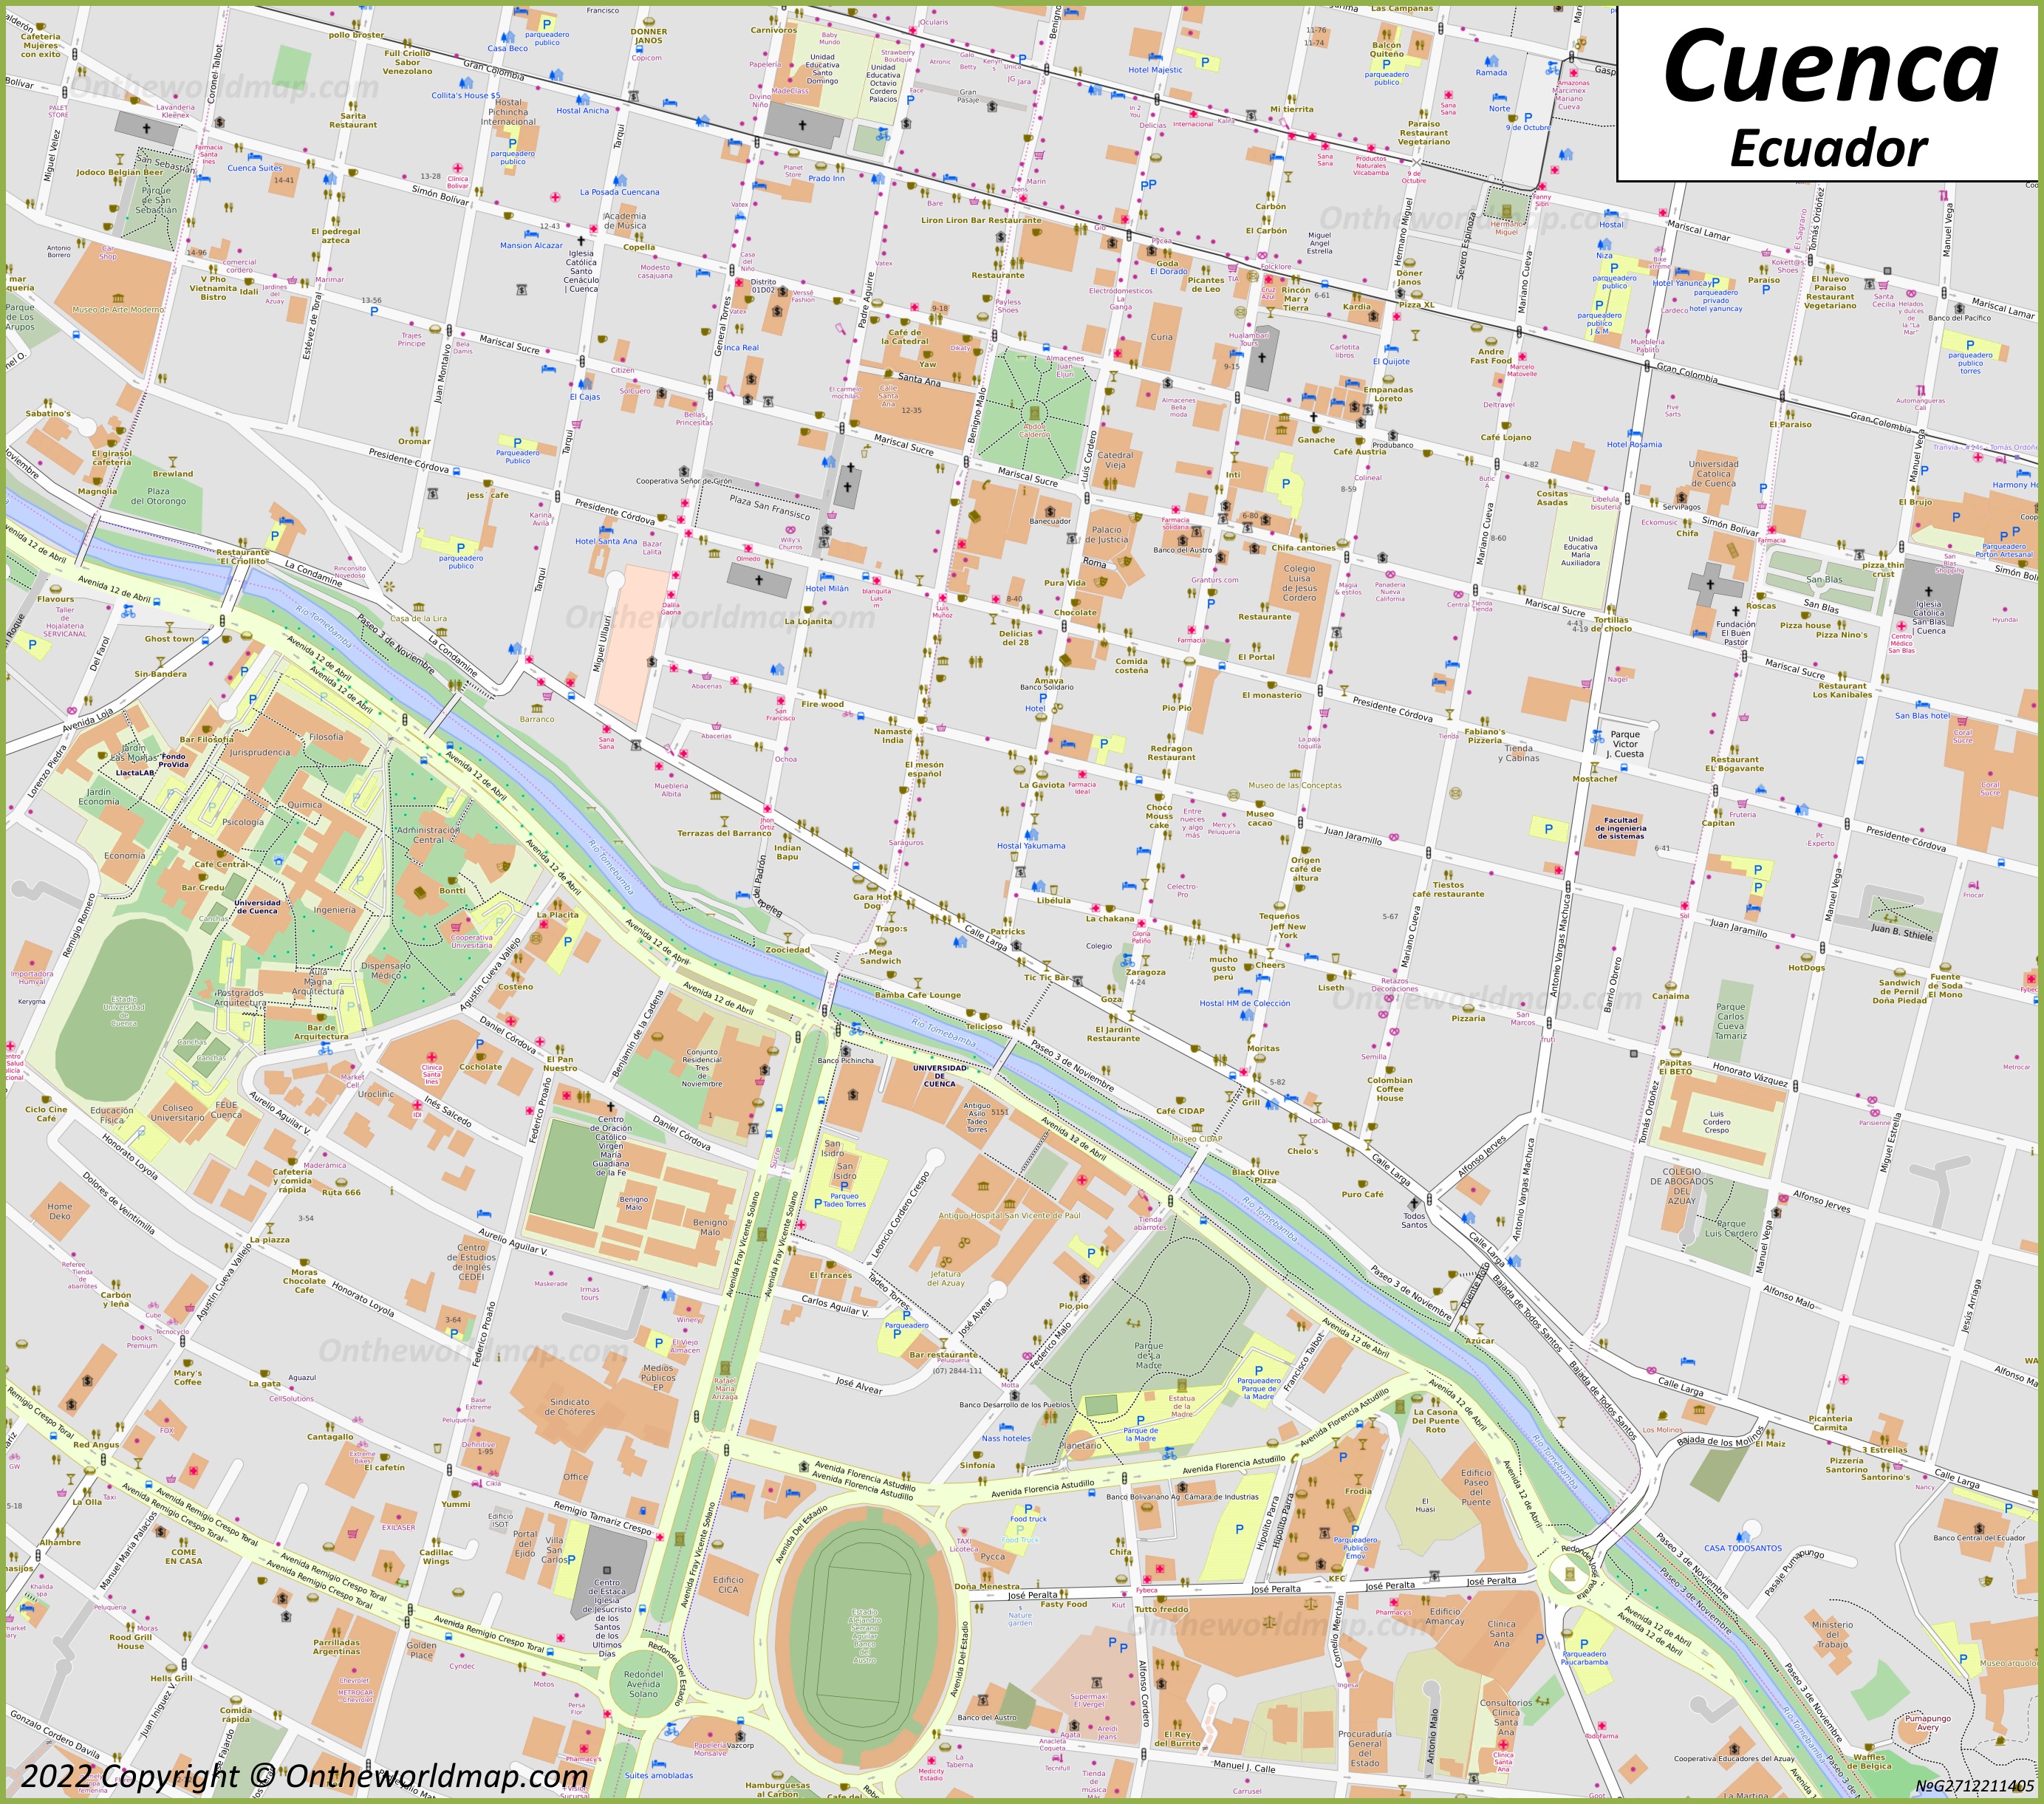 Cuenca - Mapa del centro